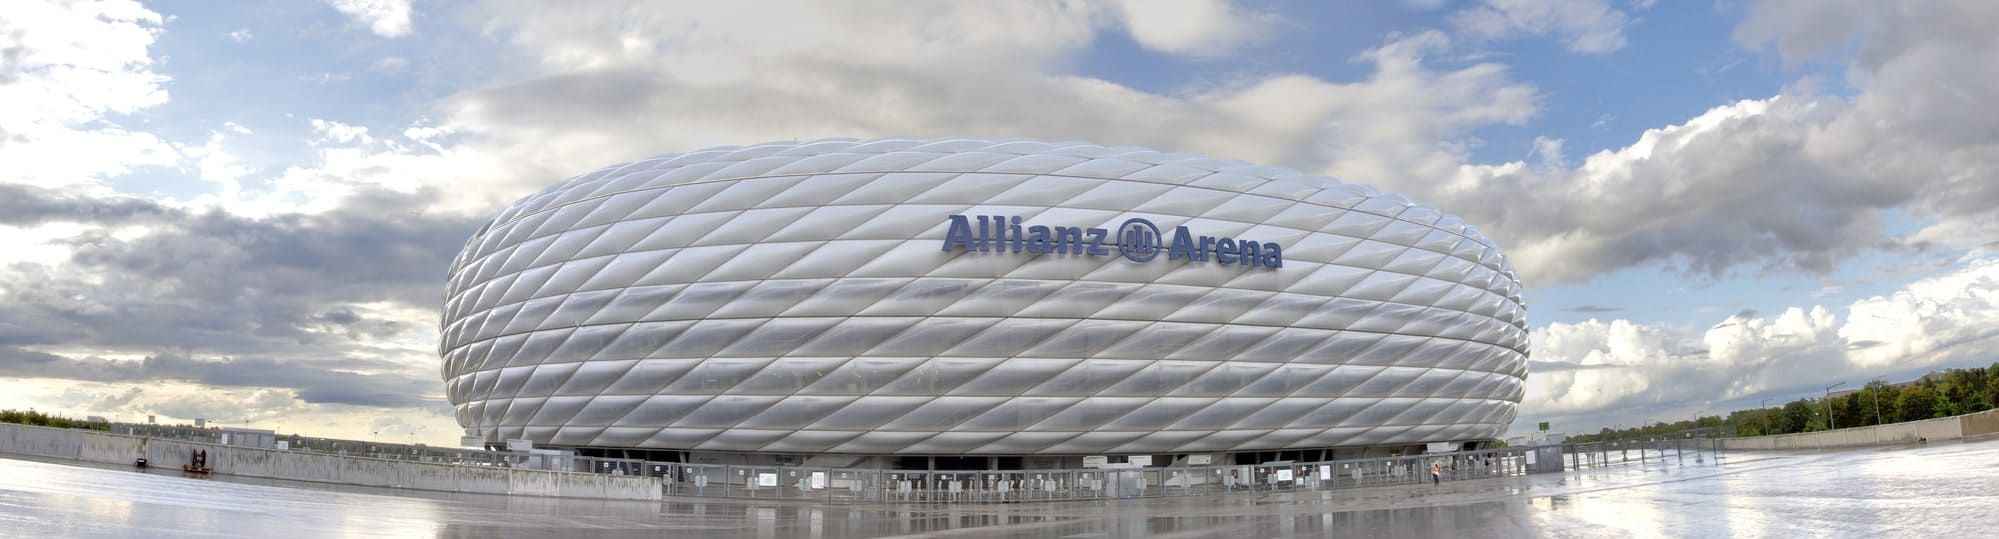 Из стали и азарта: 7 величественных стадионов мира